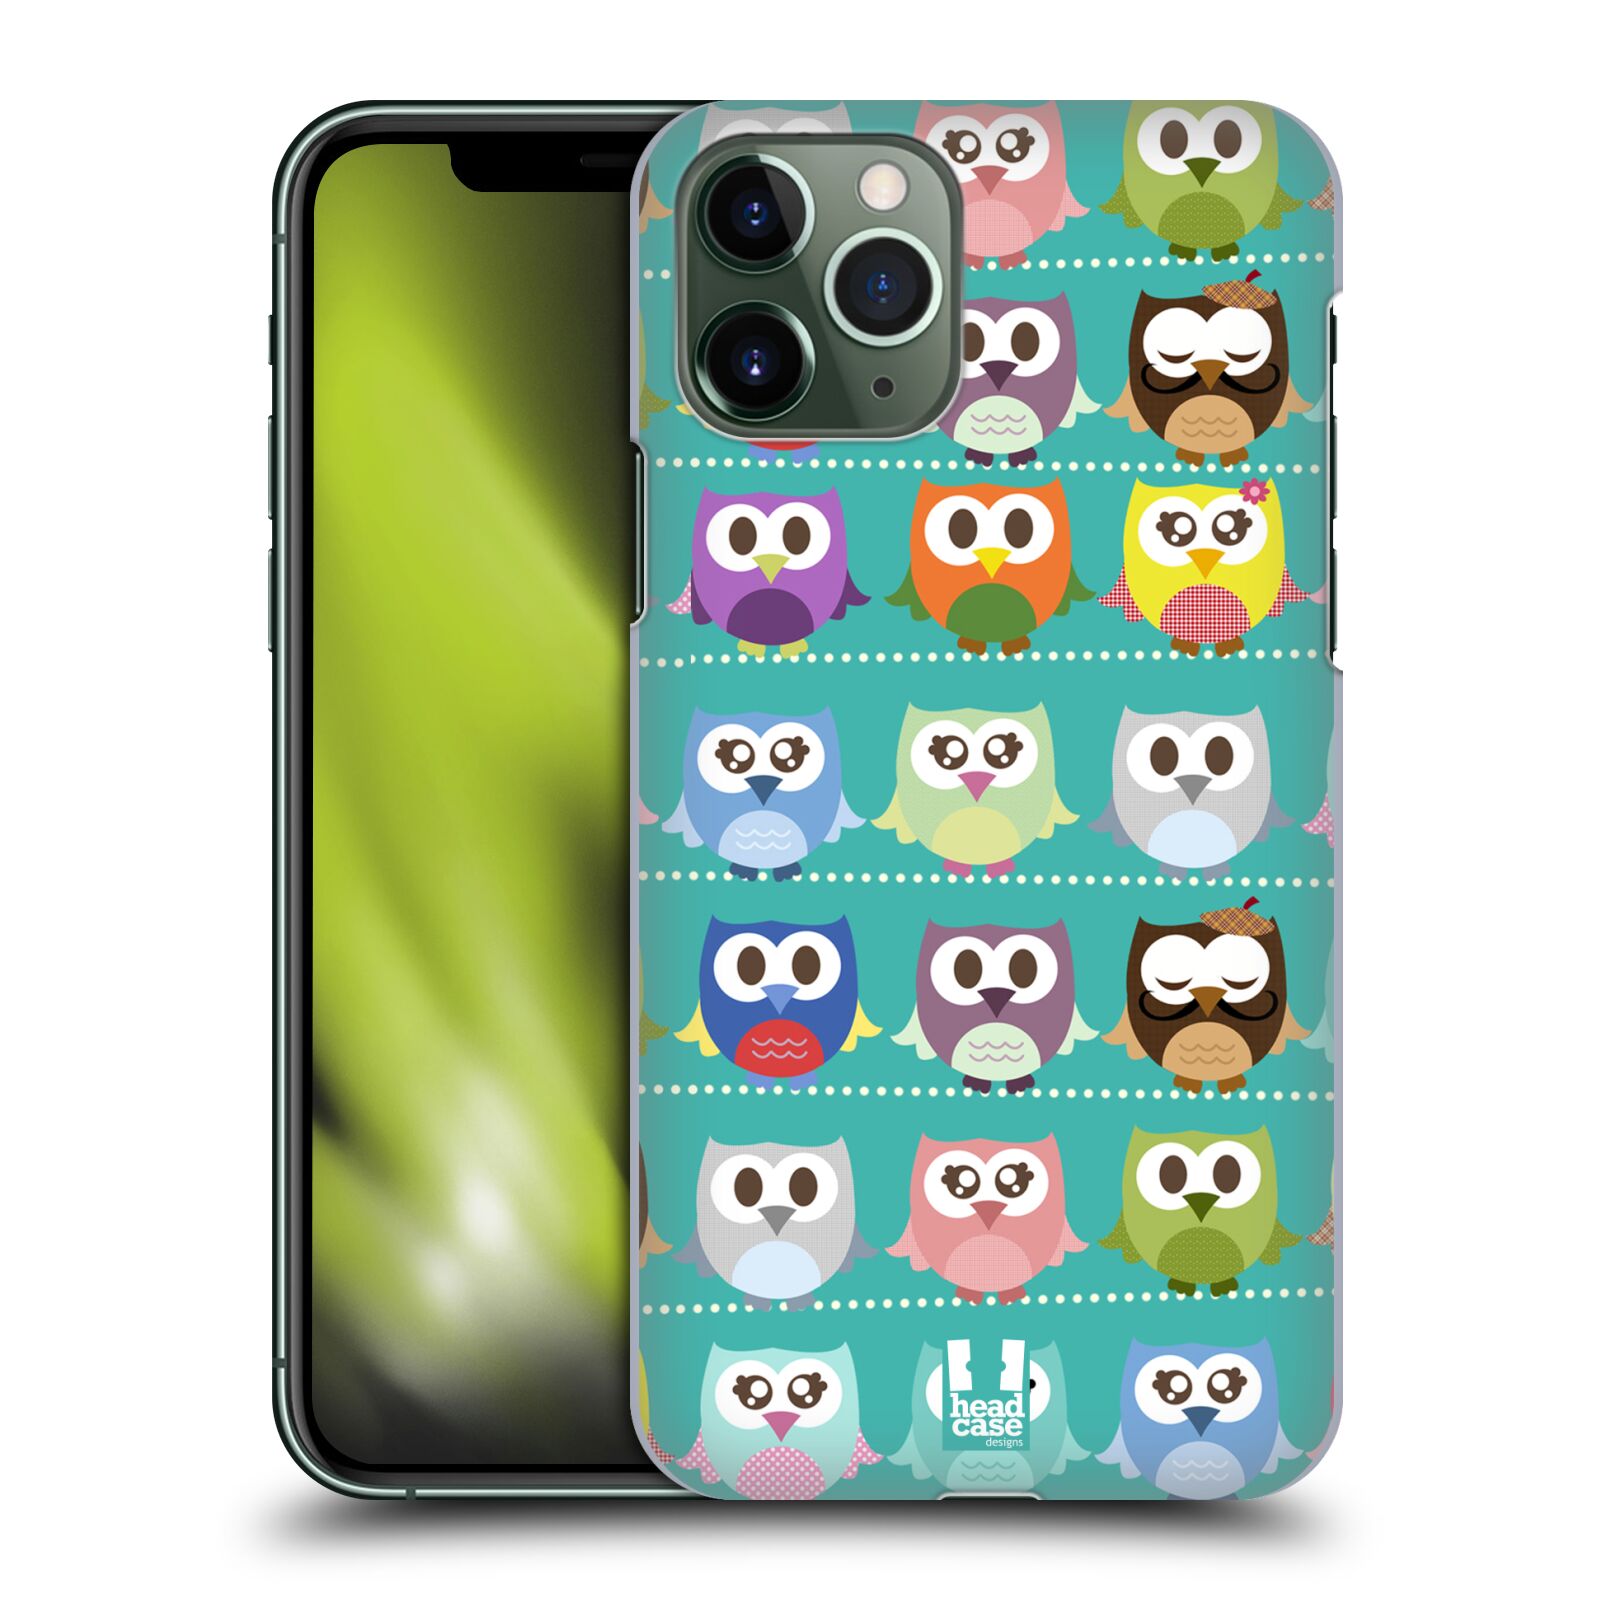 Pouzdro na mobil Apple Iphone 11 PRO - HEAD CASE - vzor Roztomilá sovička zelené sovičky